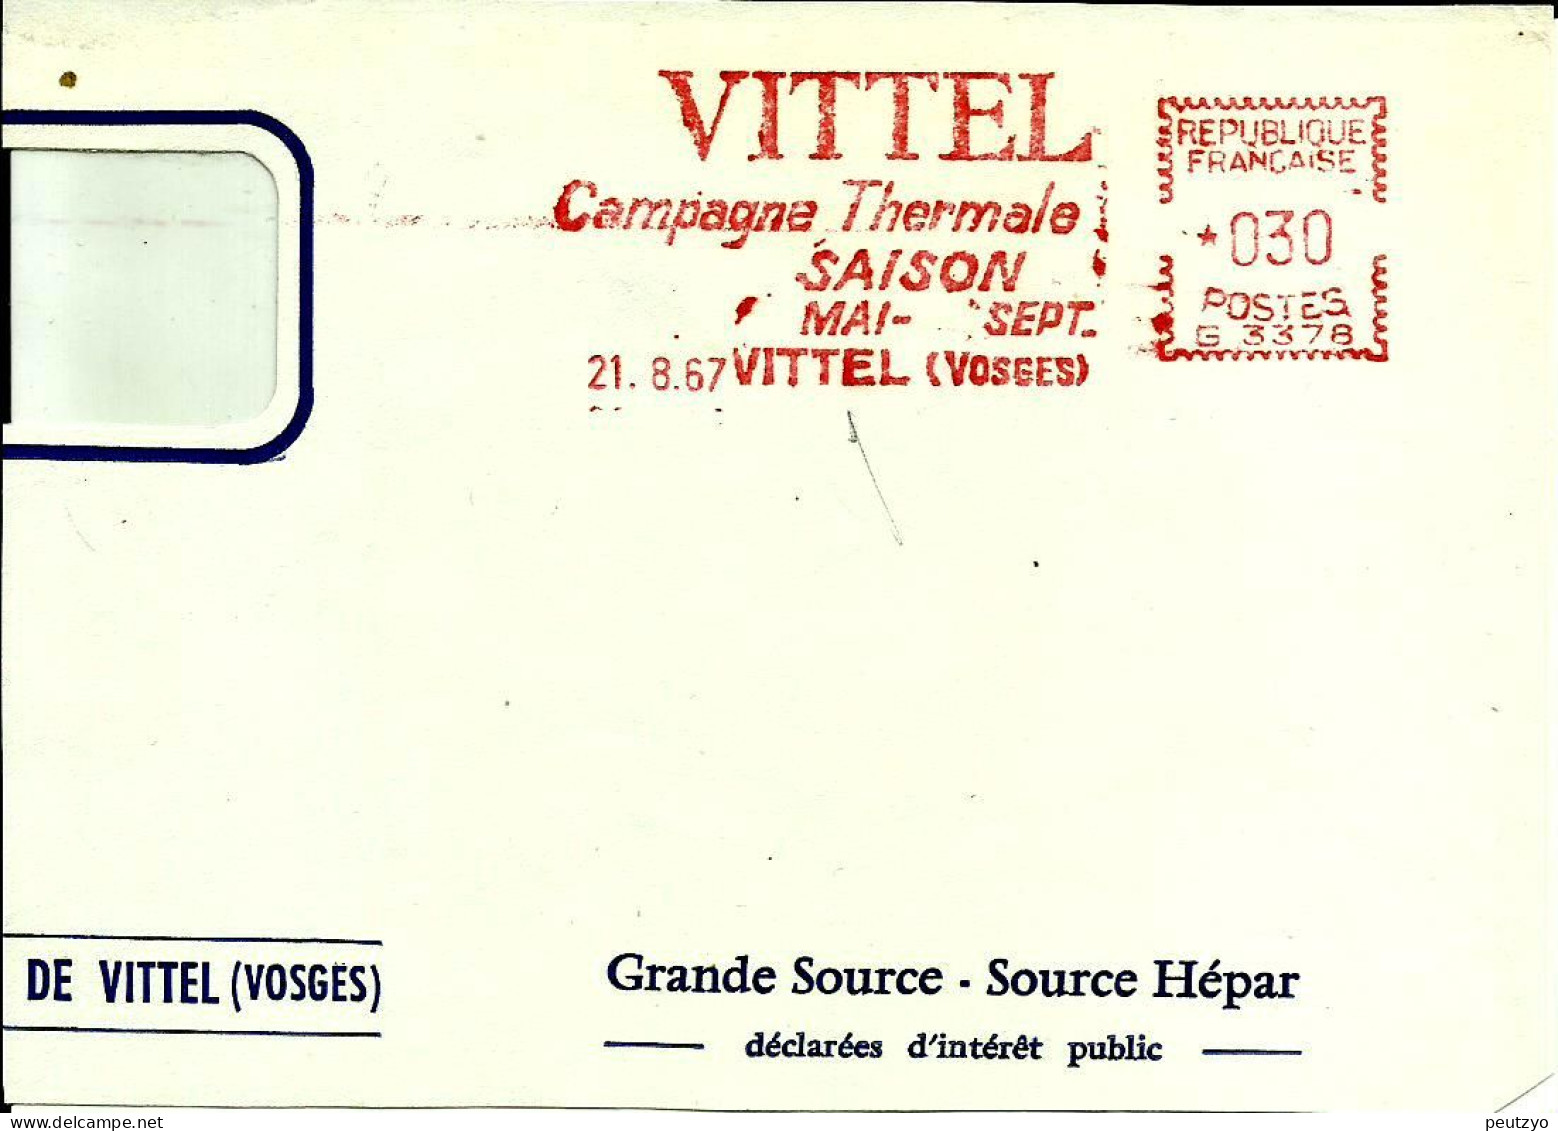 Ema Havas G 1967 Vittel Campagne Thermale Saison Boissons Eau Metier Industrie Cure 88 Vosges C29/54 - Termalismo